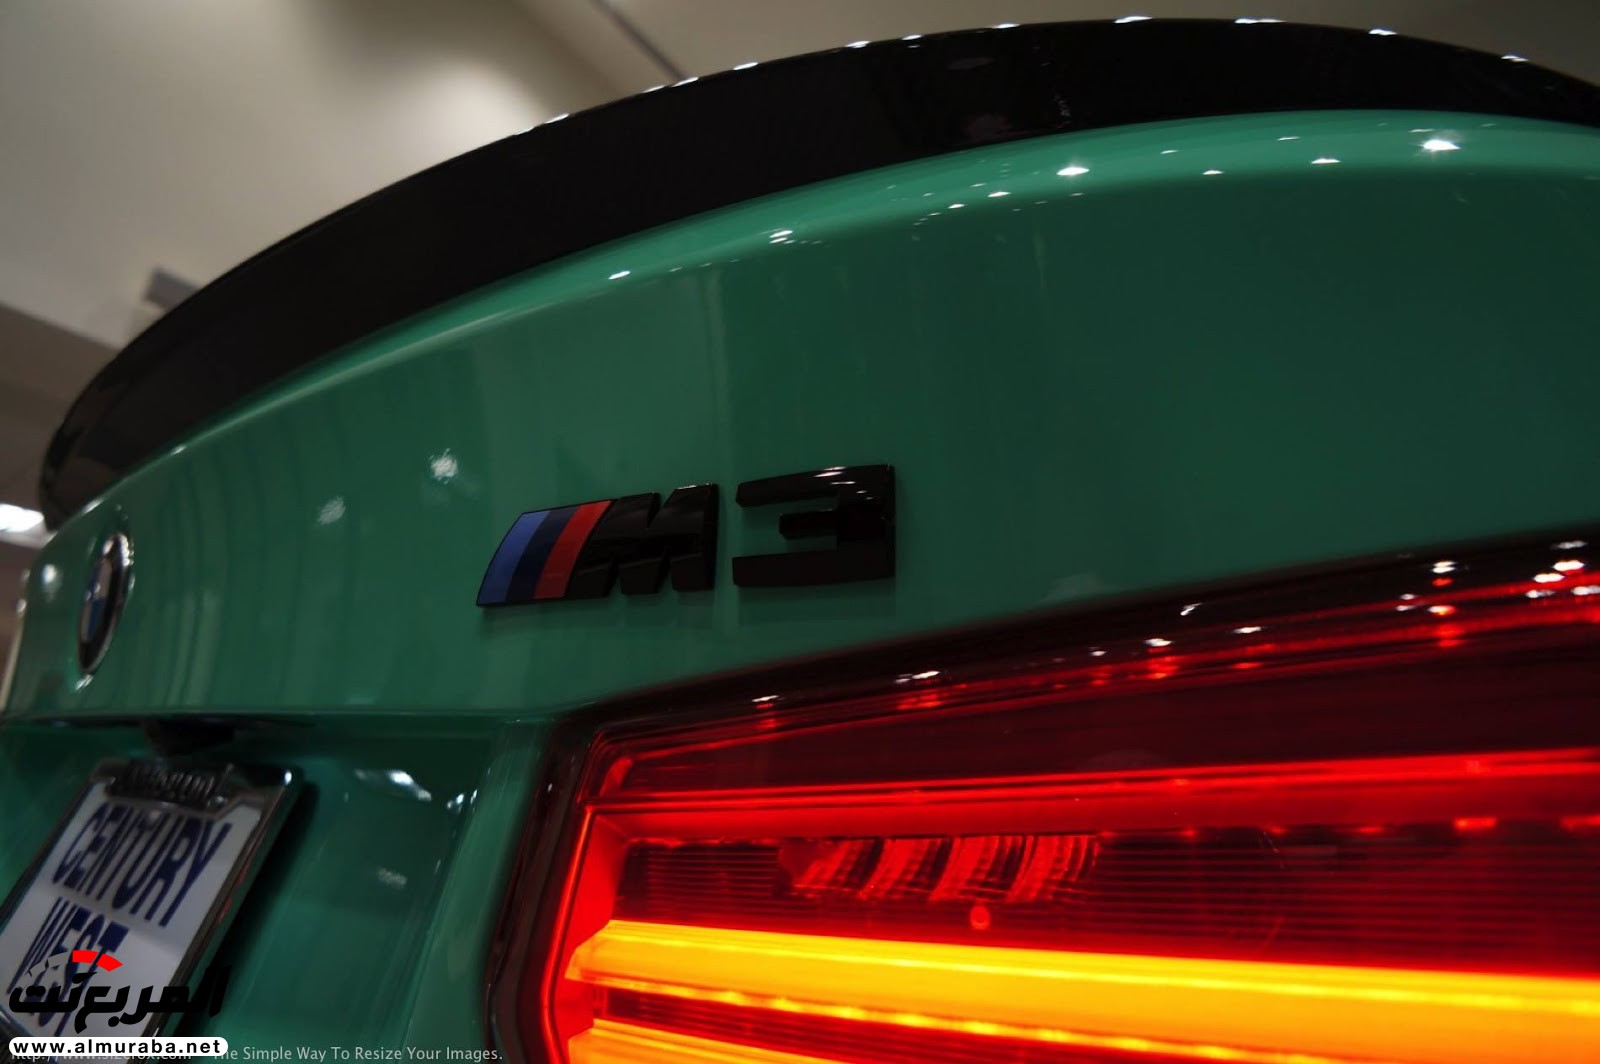 "بالصور" شاهد "بي إم دبليو" F80 M3 الخاصة بطلاء النعناع الأخضر BMW 106